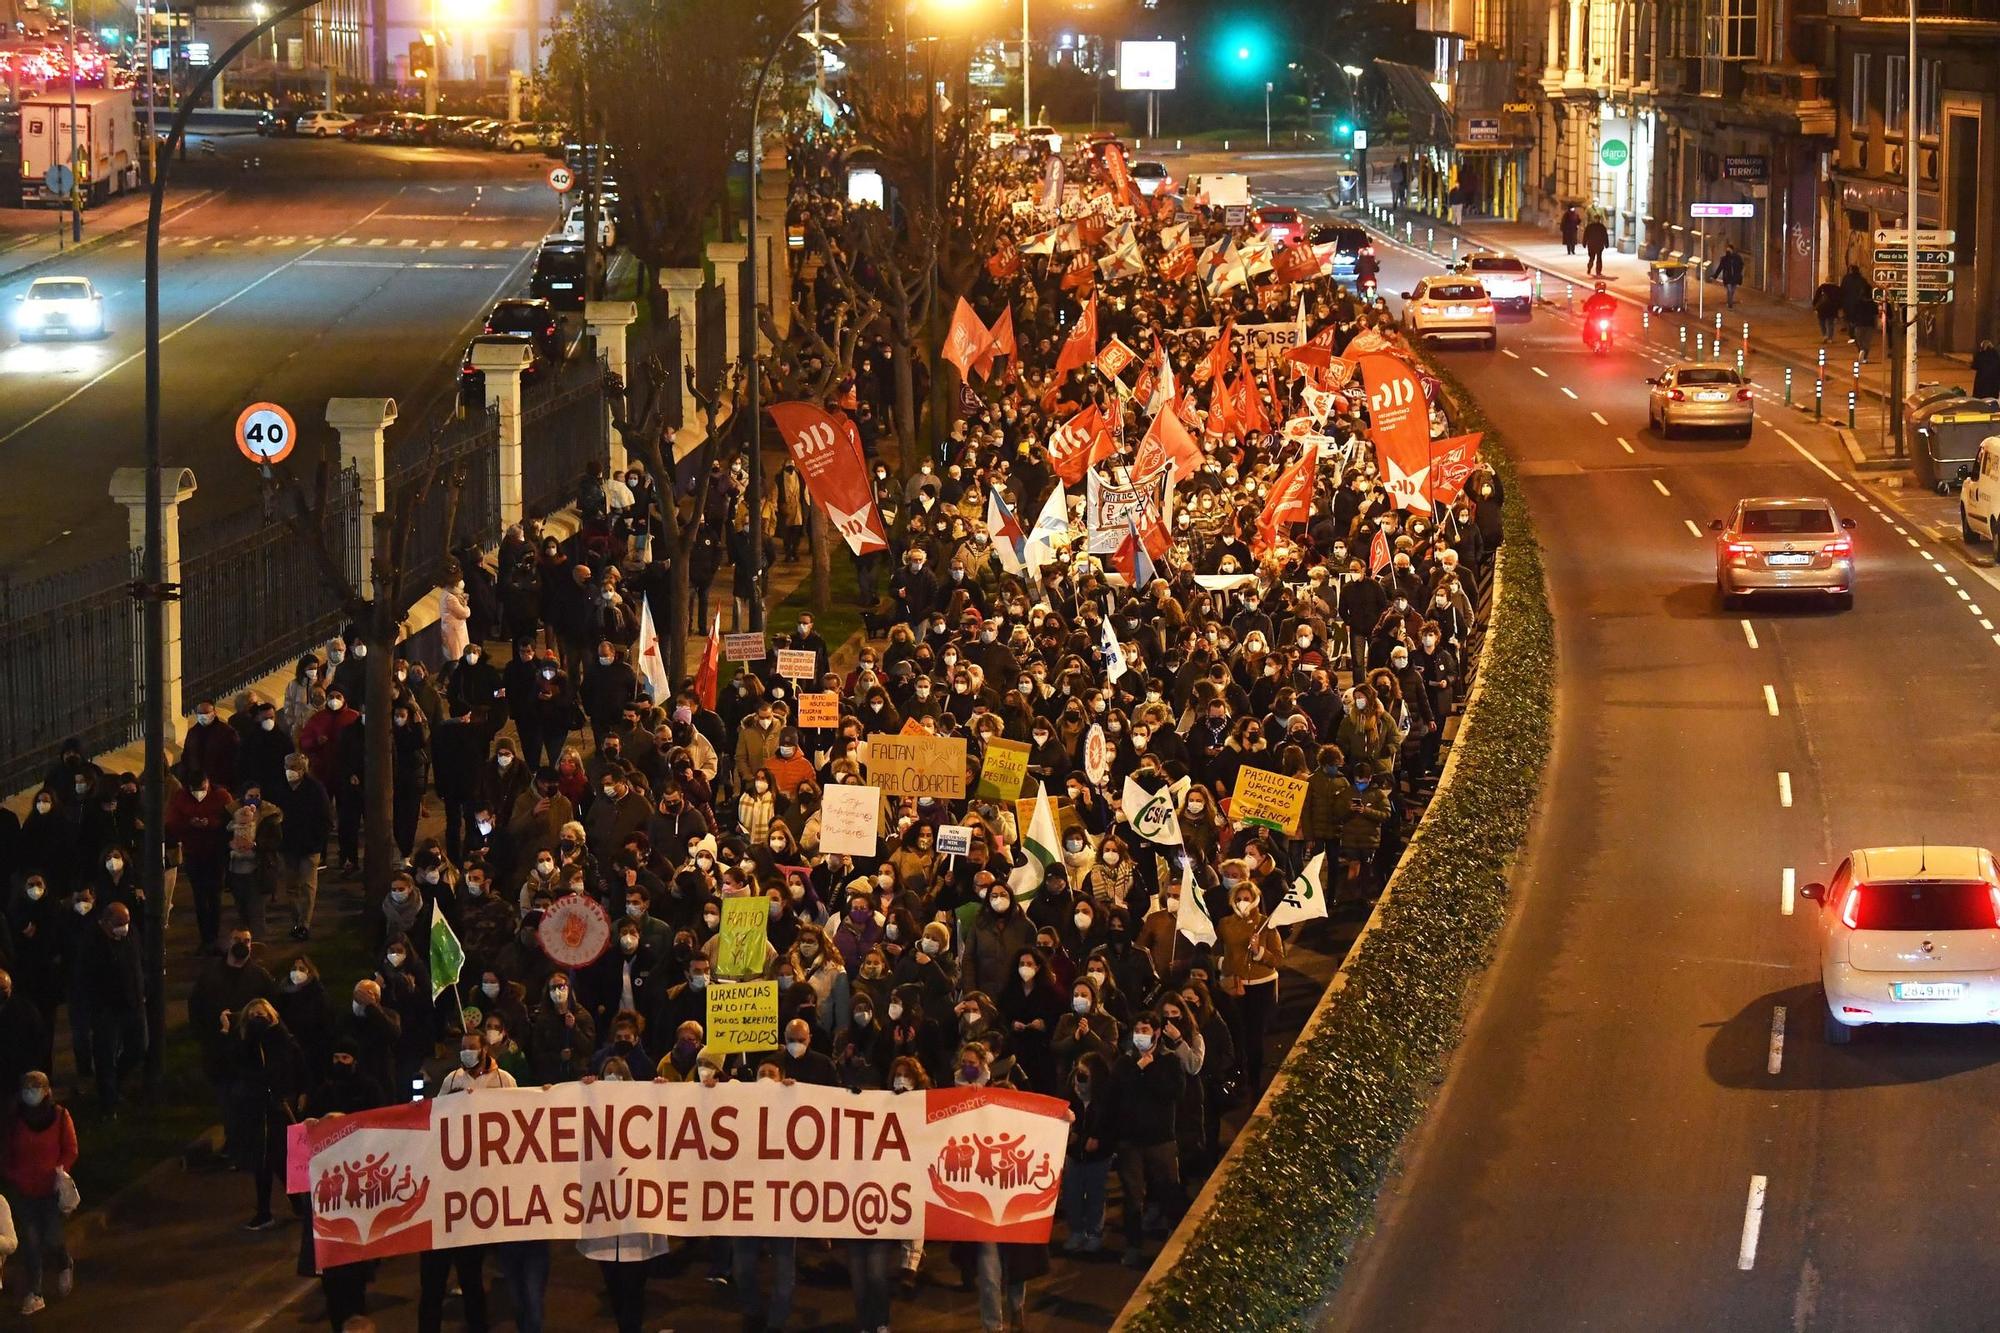 Manifestación de trabajadores del Hospital de A Coruña: "Sen persoal non hai sanidade"